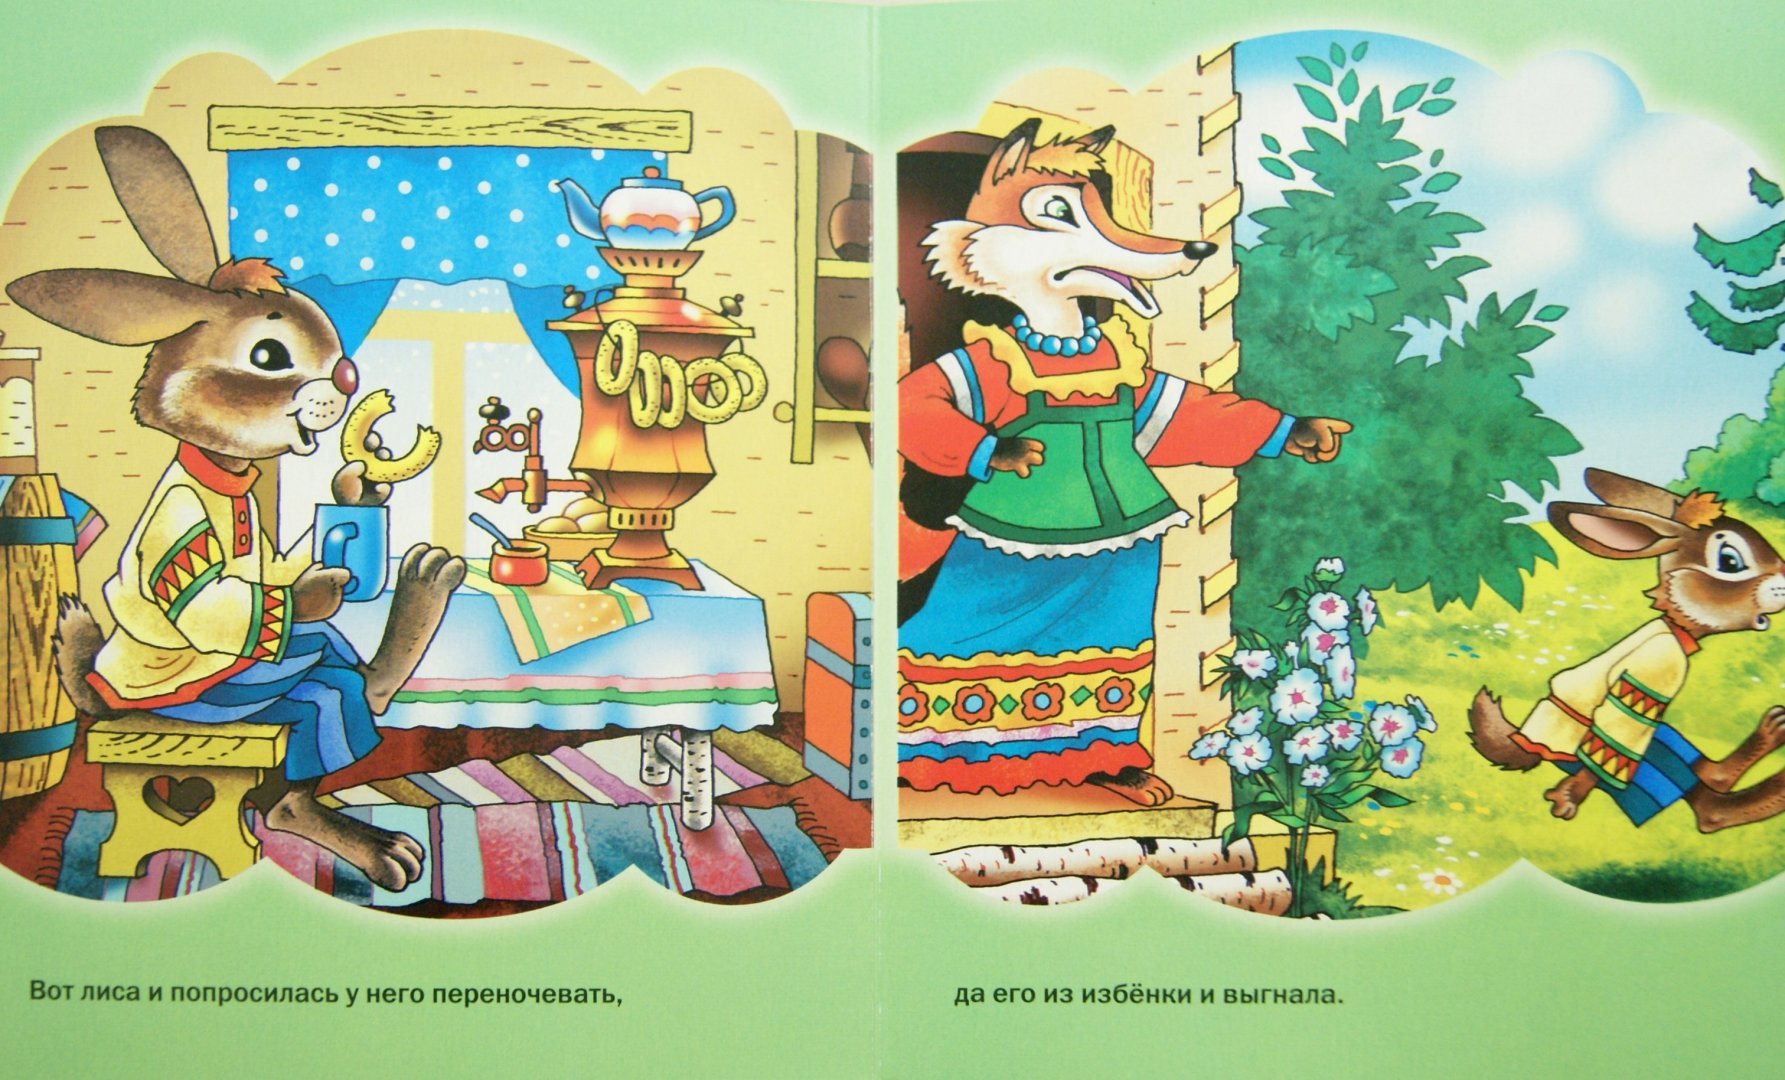 Лиса и заяц занятия. Сказка лиса и заяц. Лиса и заяц русская народная сказка. Иллюстрации к сказке лиса и заяц. Иллюстрации к сказке Заюшкина избушка.